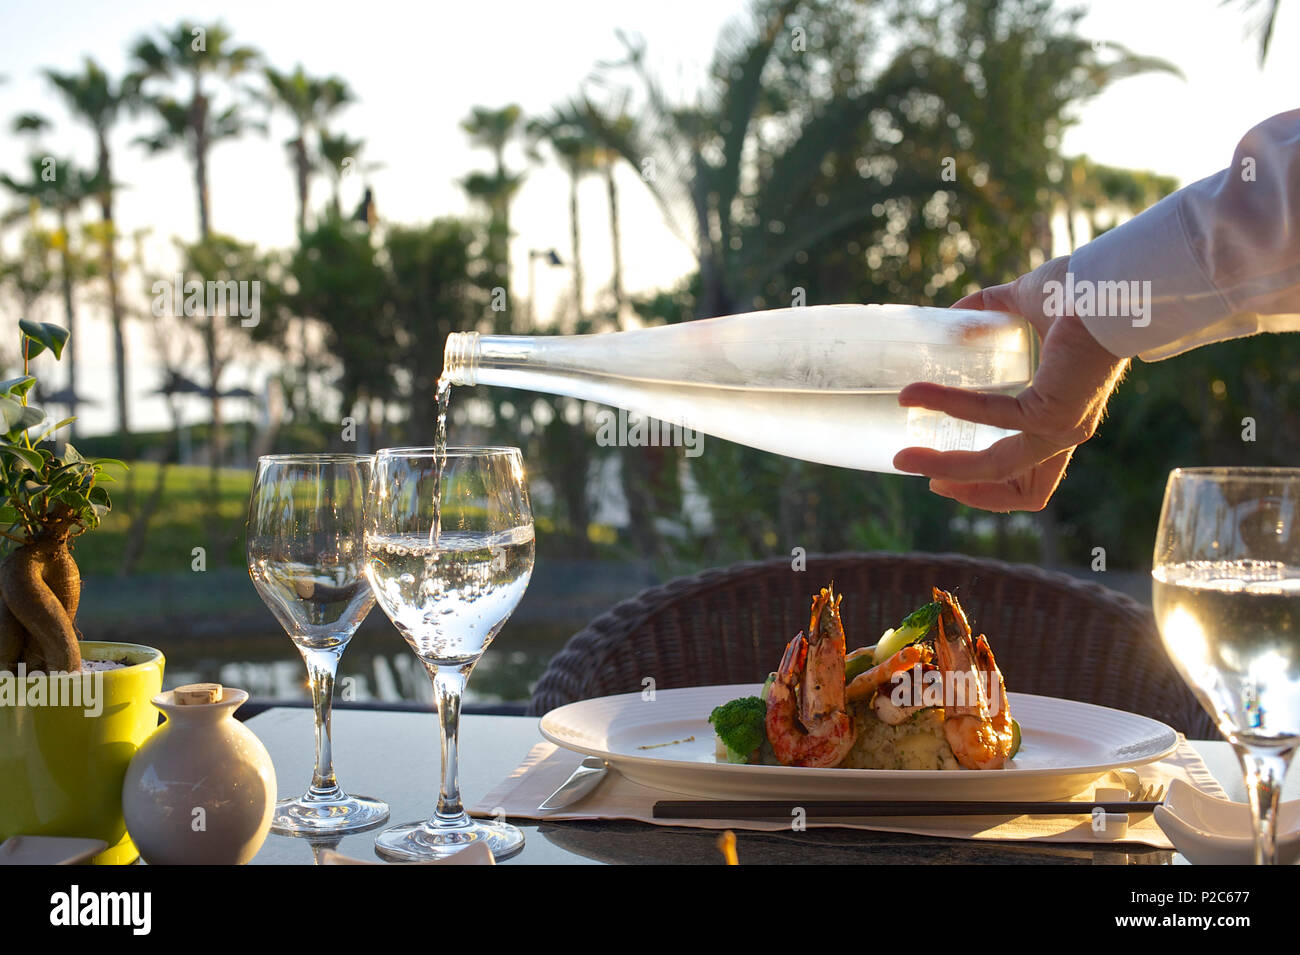 Ort Einstellung mit Wein Gläser, Riesengarnelen und Hand des Kellners Wasser im Garten Restaurant mit Palmen im BAC-Dienst Stockfoto